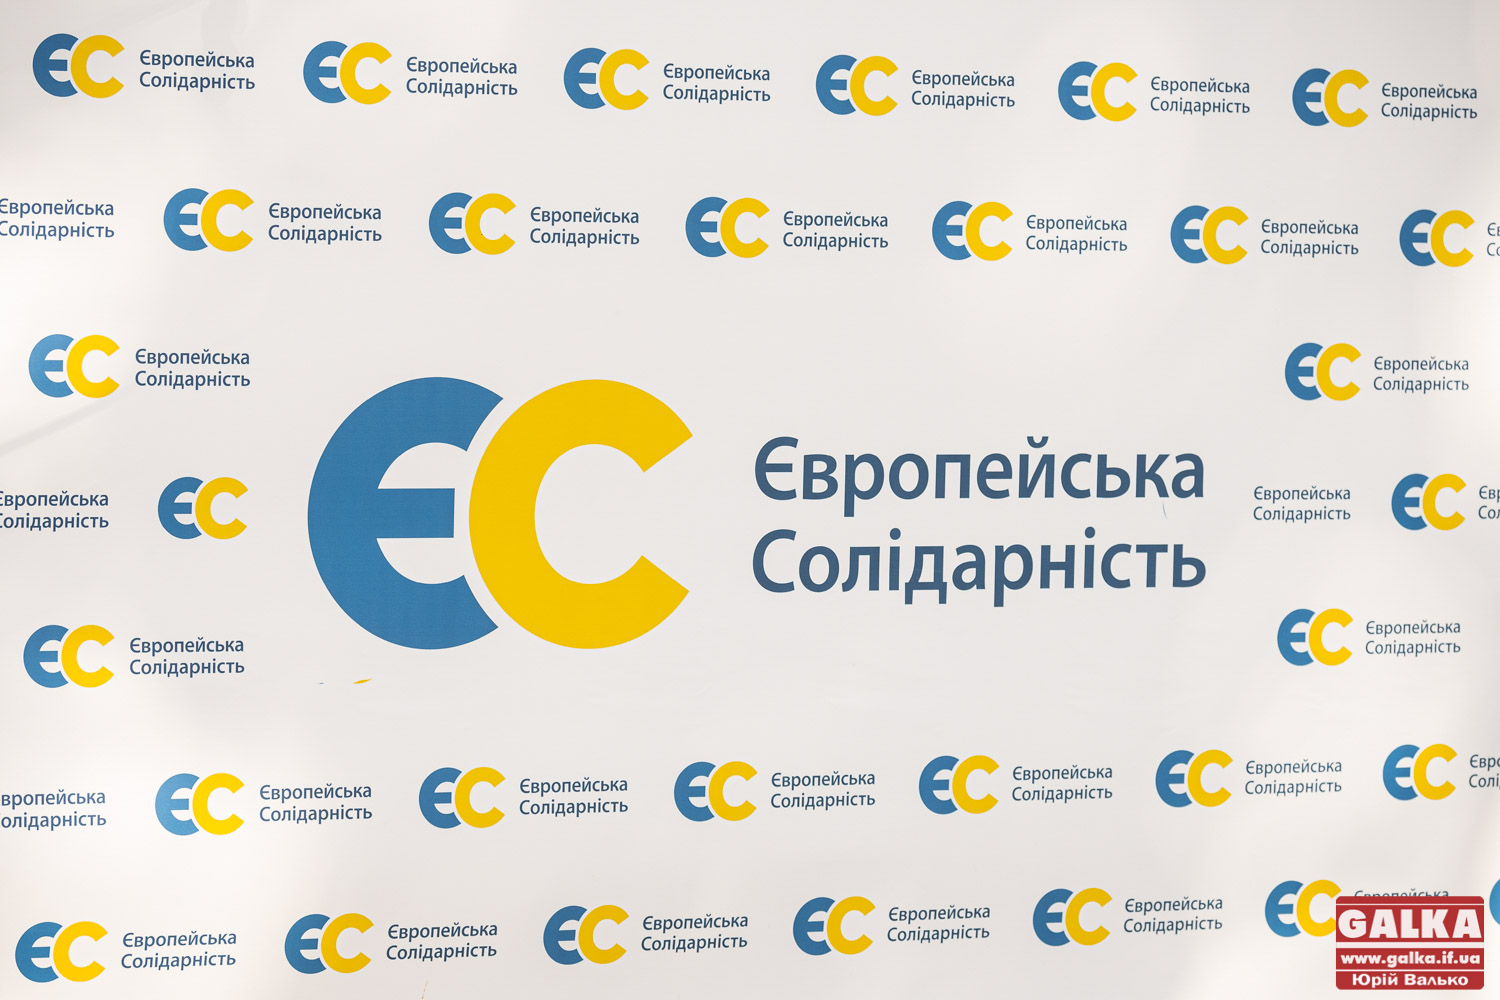 Депутати Івано-Франківської районної ради від Євросолідарності звітують про надану допомогу